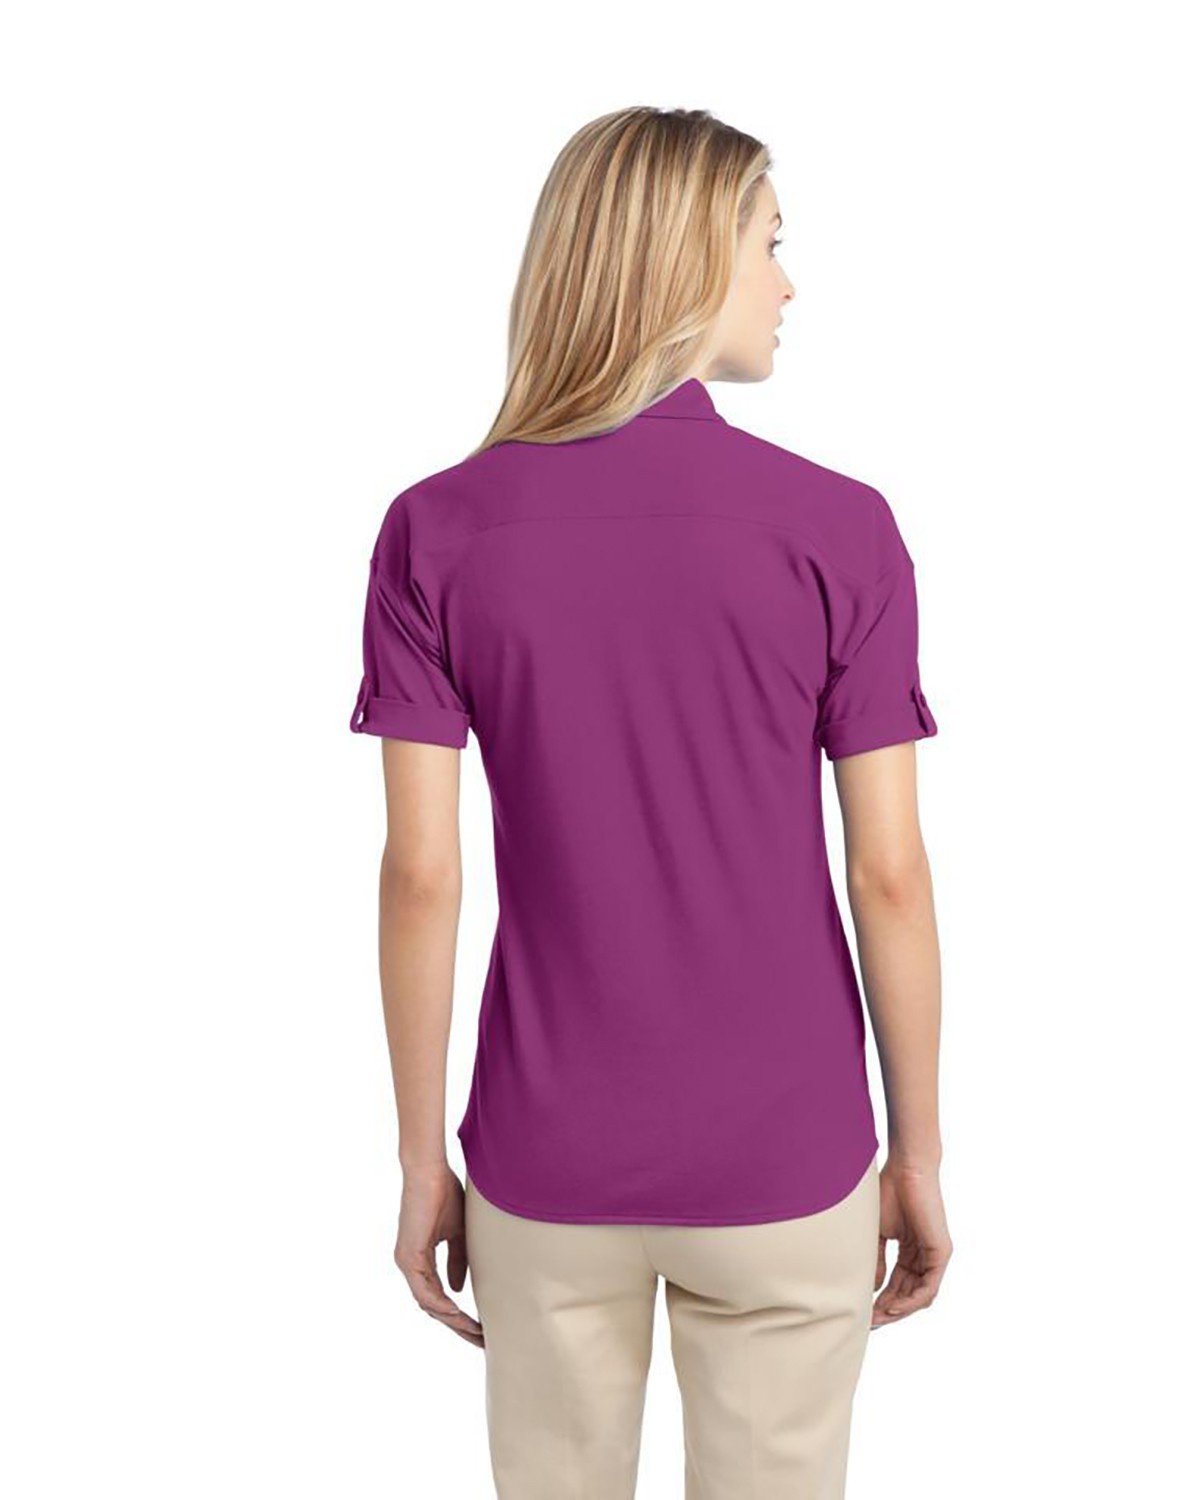 'Port Authority L556 Ladies Stretch Pique Button-Front Shirt'